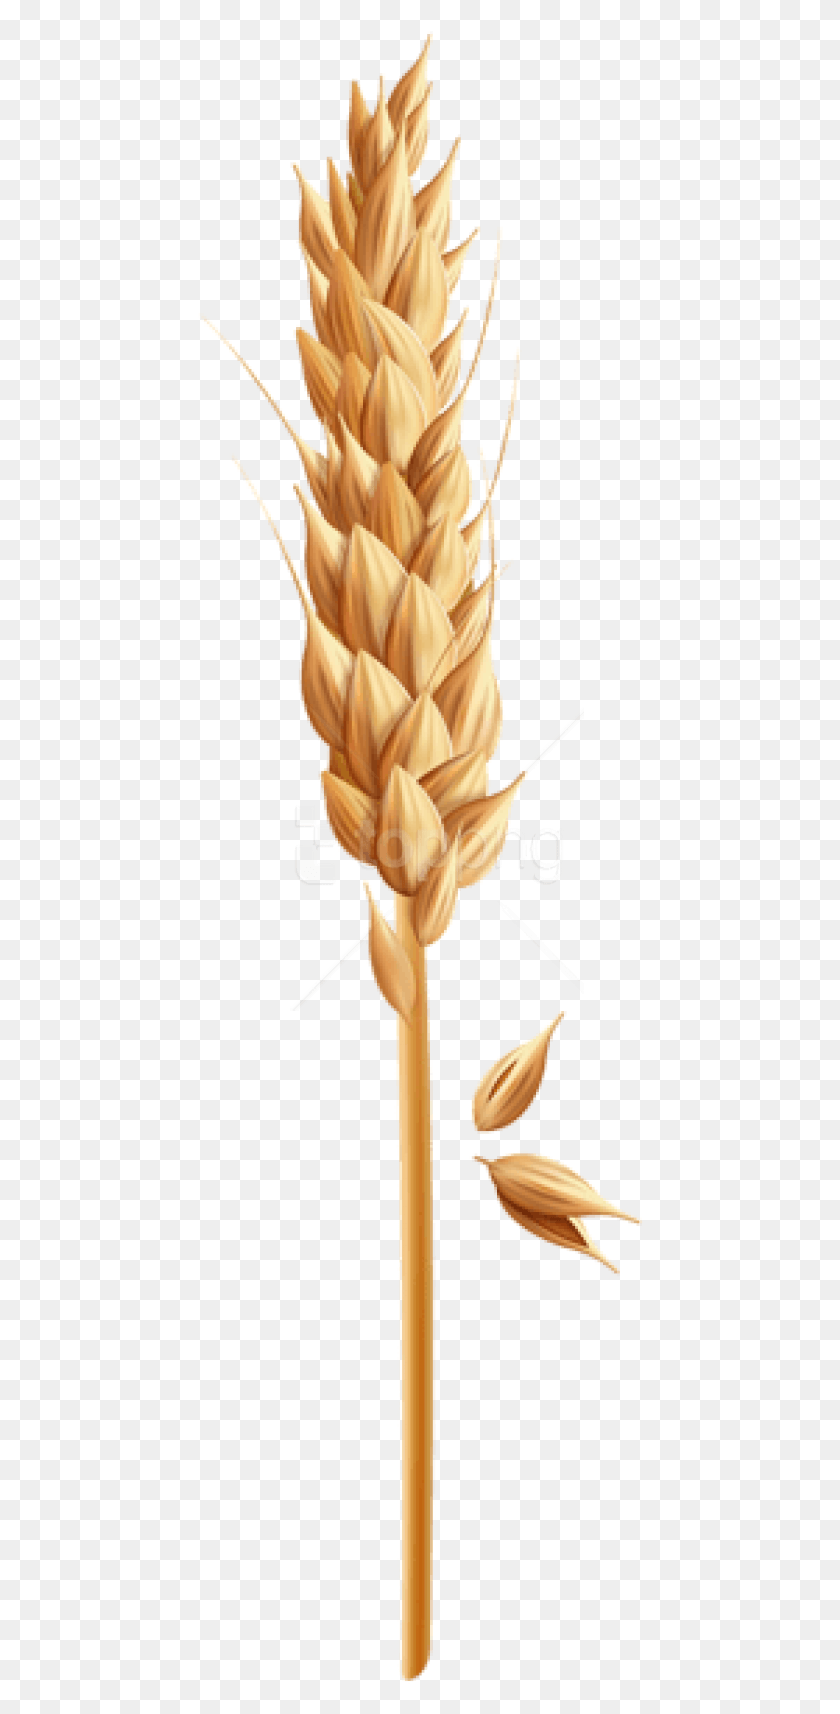 446x1654 Free Wheat Grain Clipart Photo Grano De Trigo Clipart, Planta, Vegetal, Alimentos Hd Png Descargar